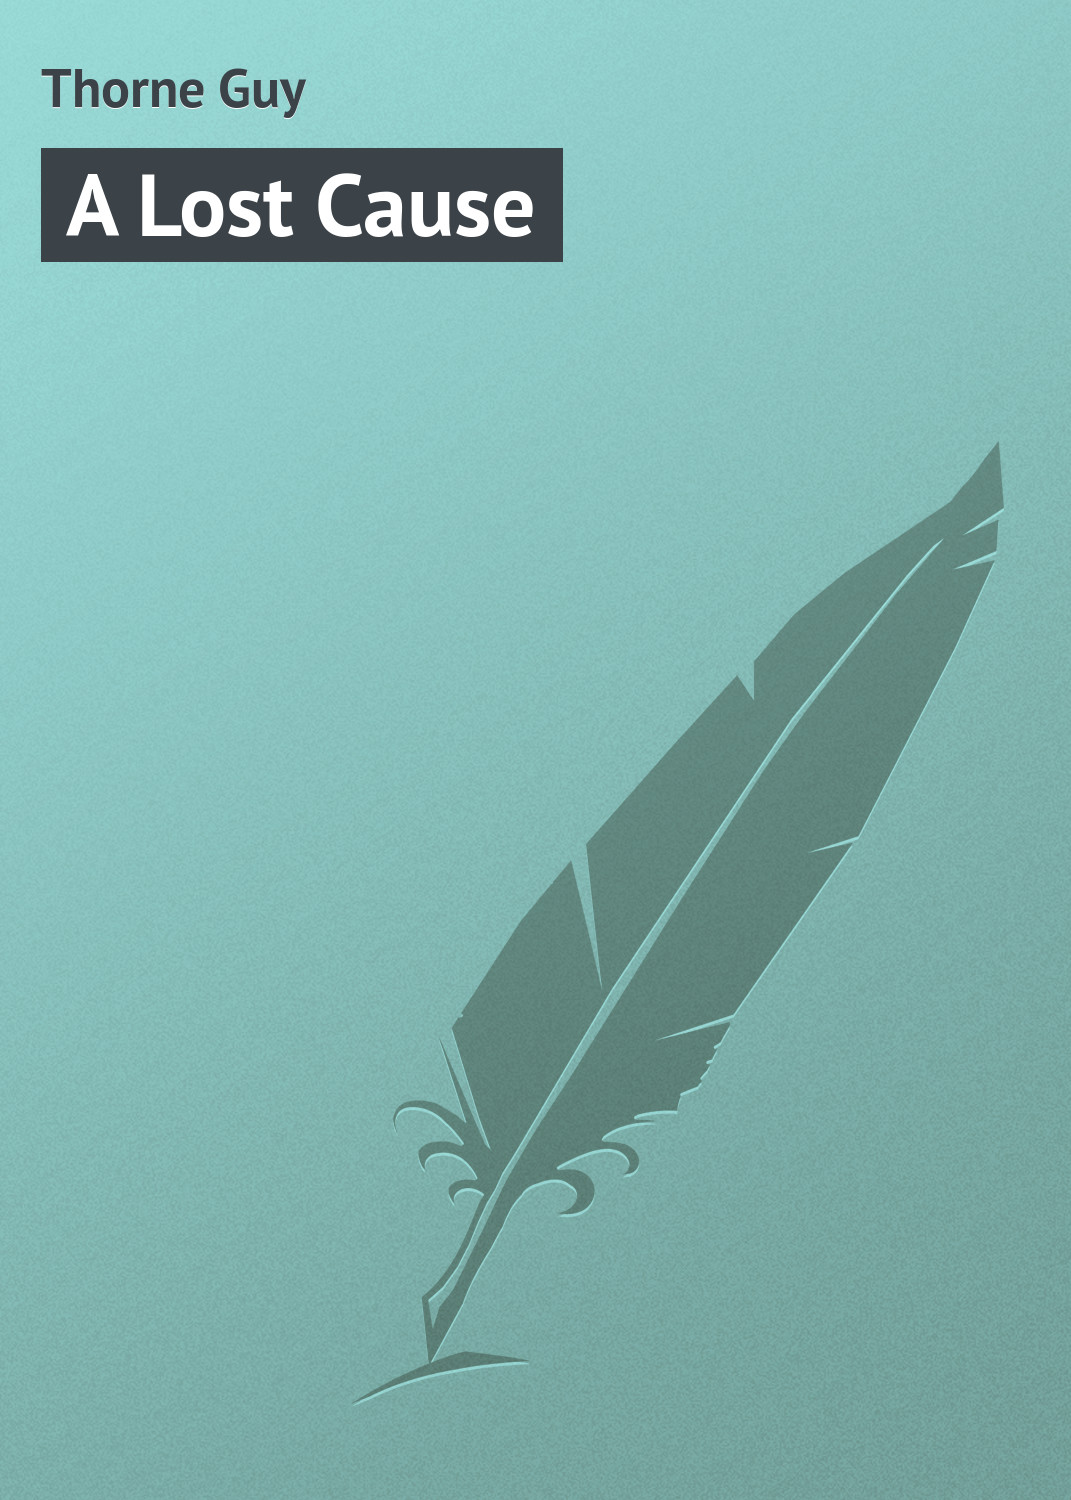 Книга A Lost Cause из серии , созданная Guy Thorne, может относится к жанру Зарубежная классика. Стоимость электронной книги A Lost Cause с идентификатором 23157323 составляет 5.99 руб.